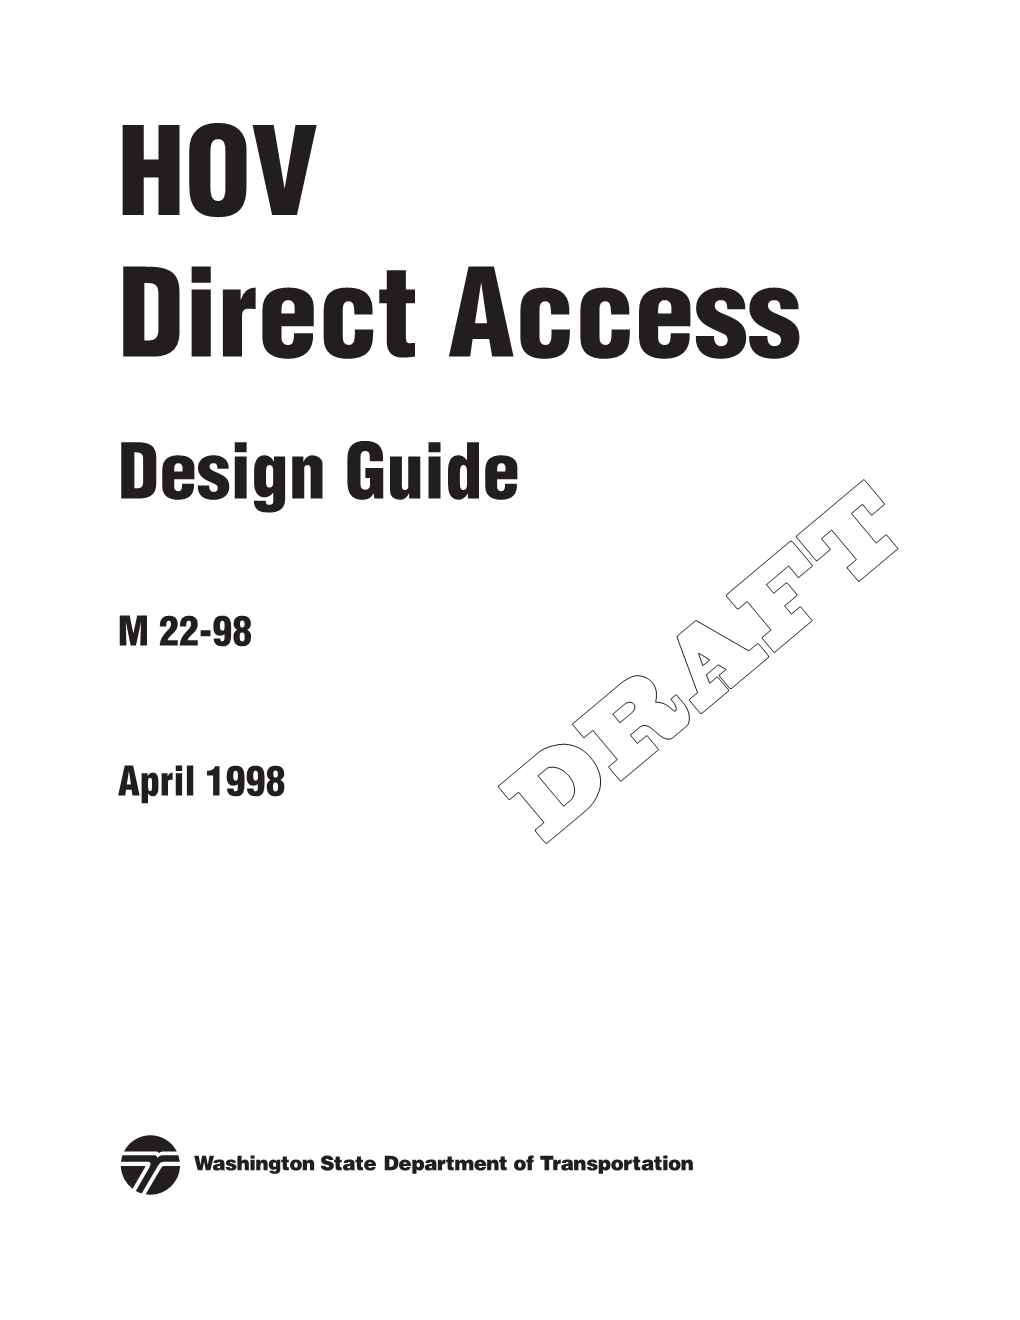 HOV Direct Access Design Guide (M 22-98)